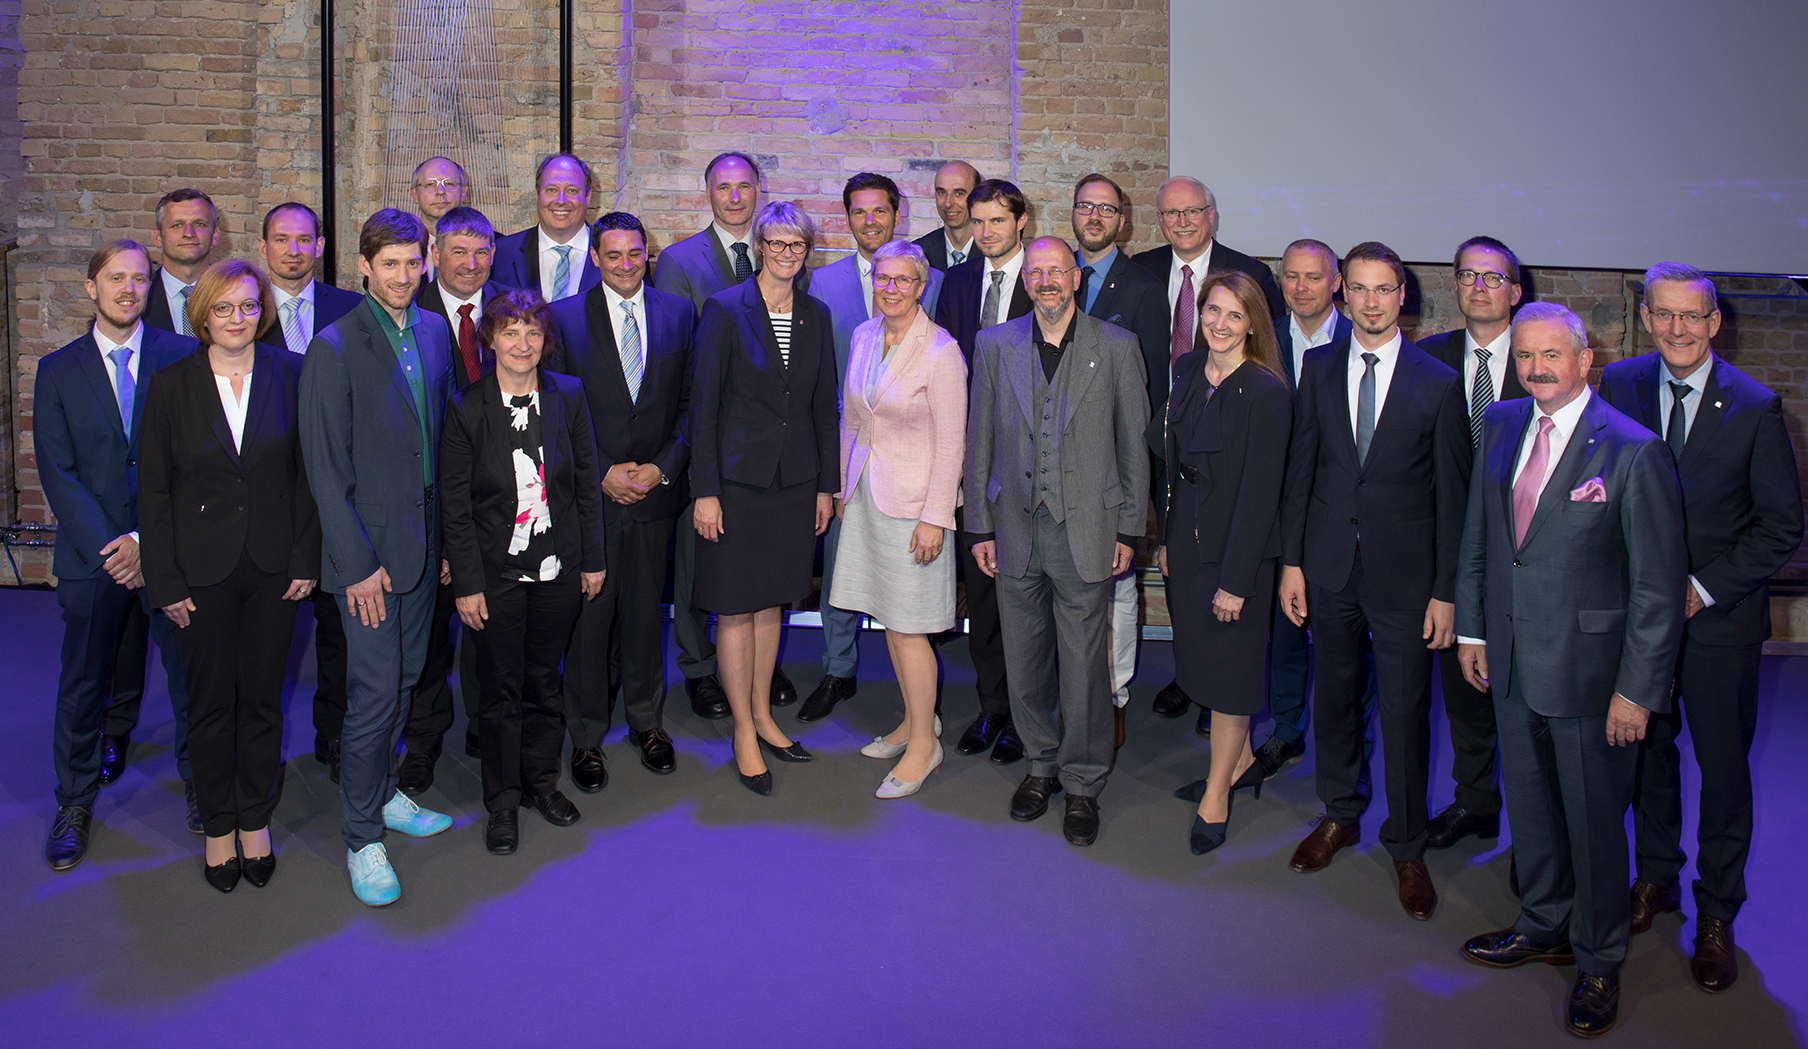 Fraunhofer Prize ceremony 2018 in Berlin.